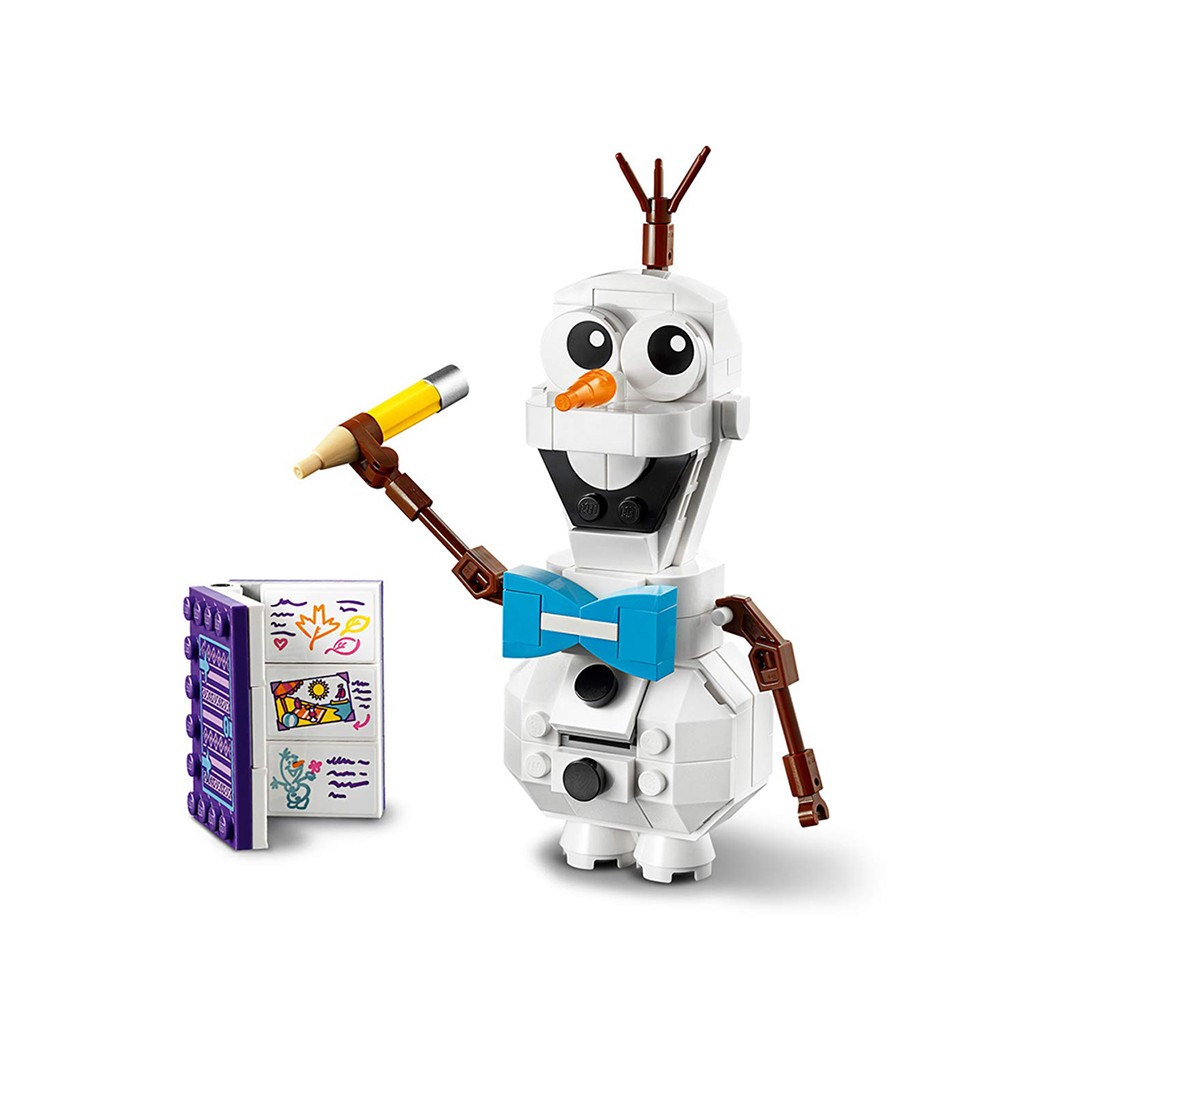 Lego Disney Frozen 2 Olaf 41169 Blocks for Kids age 6Y+ 